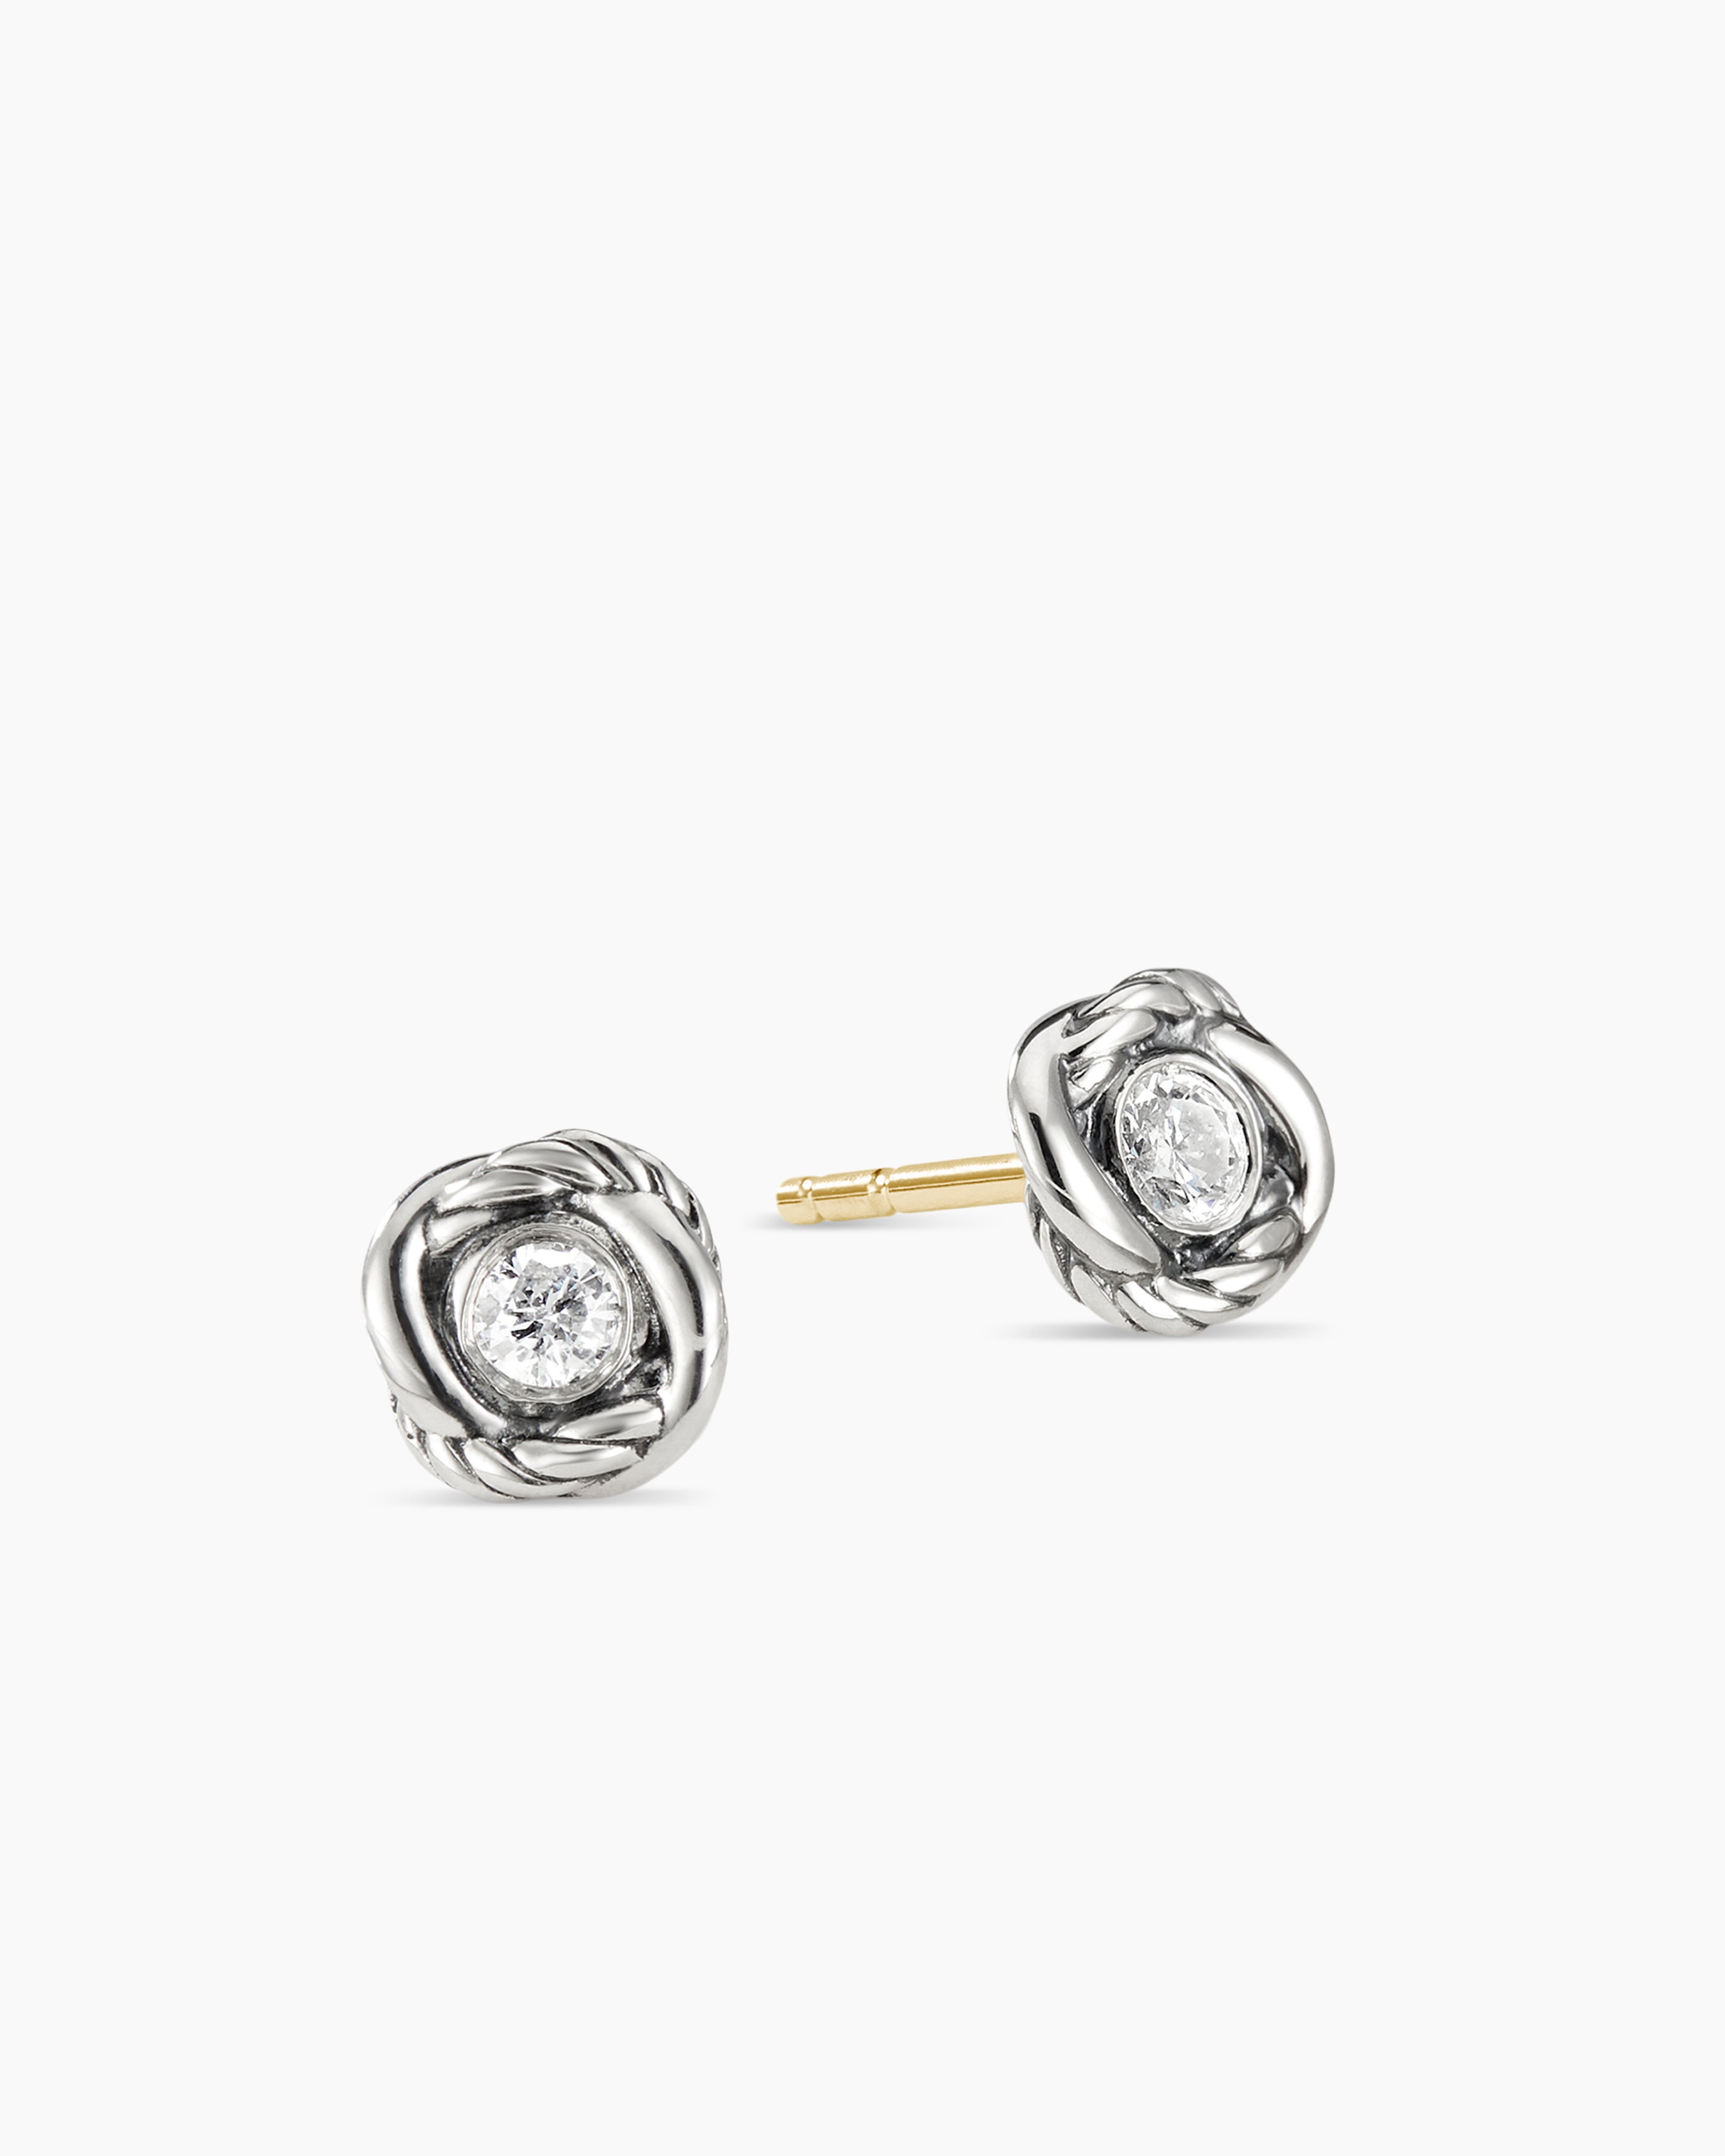 David Yurman Small Pearl Earrings with Diamonds Silver